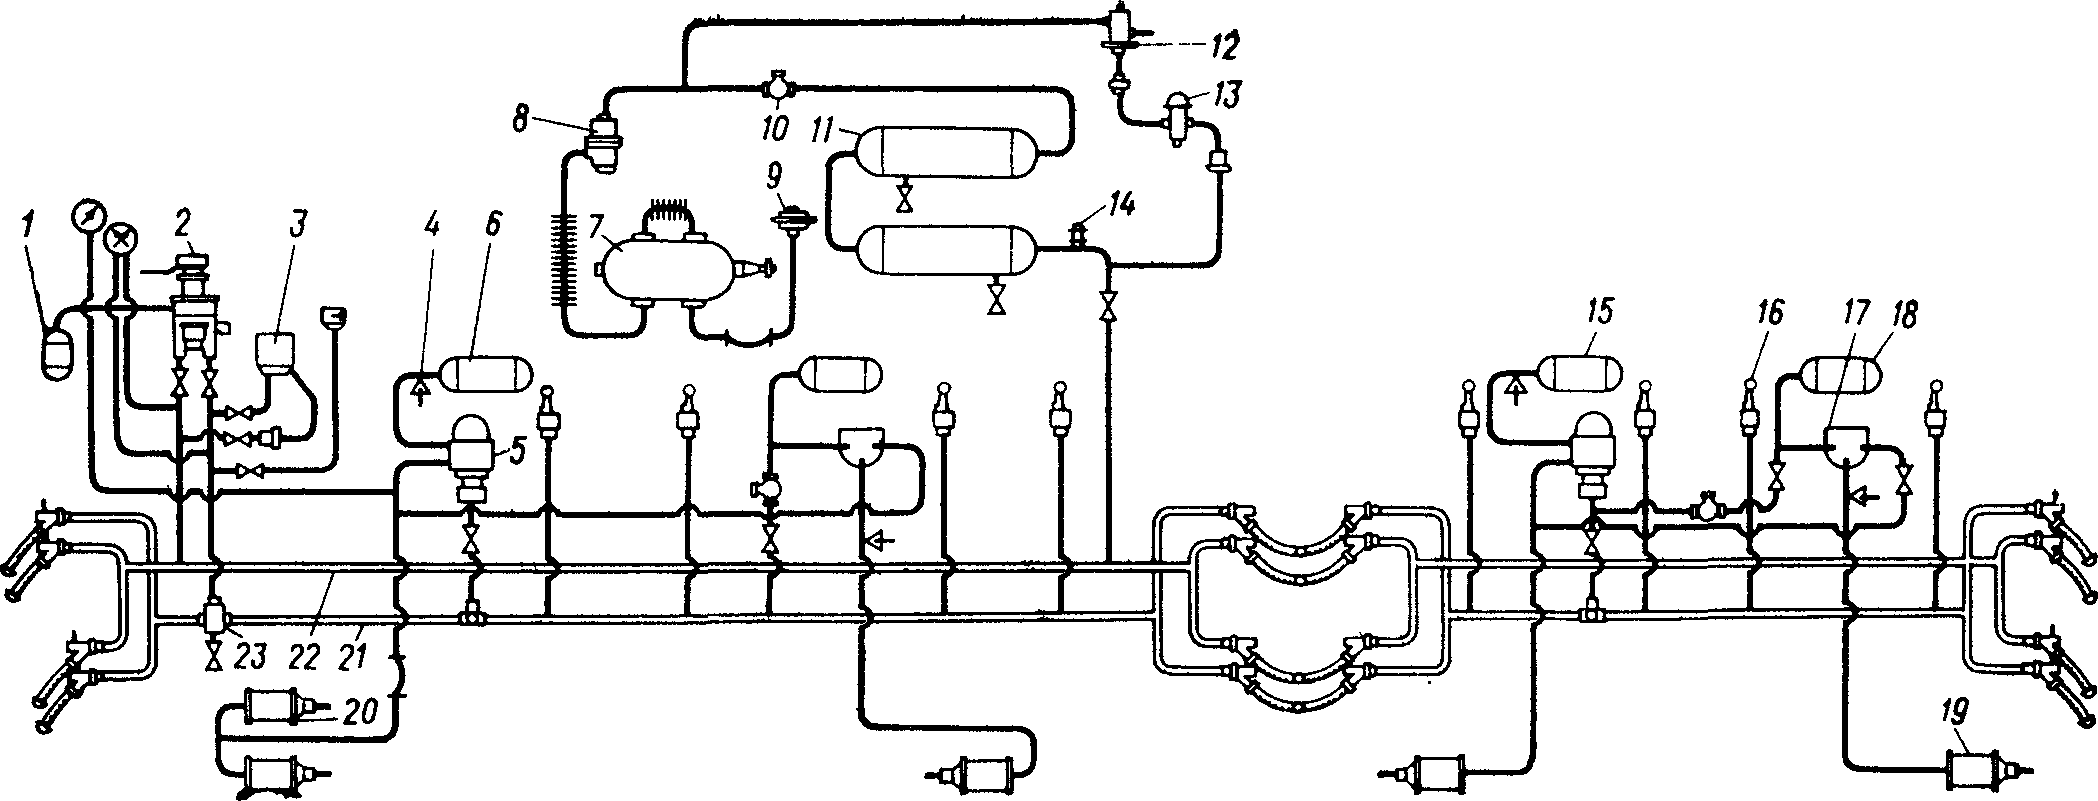 Схема тормозного оборудования дизель-поезда Д